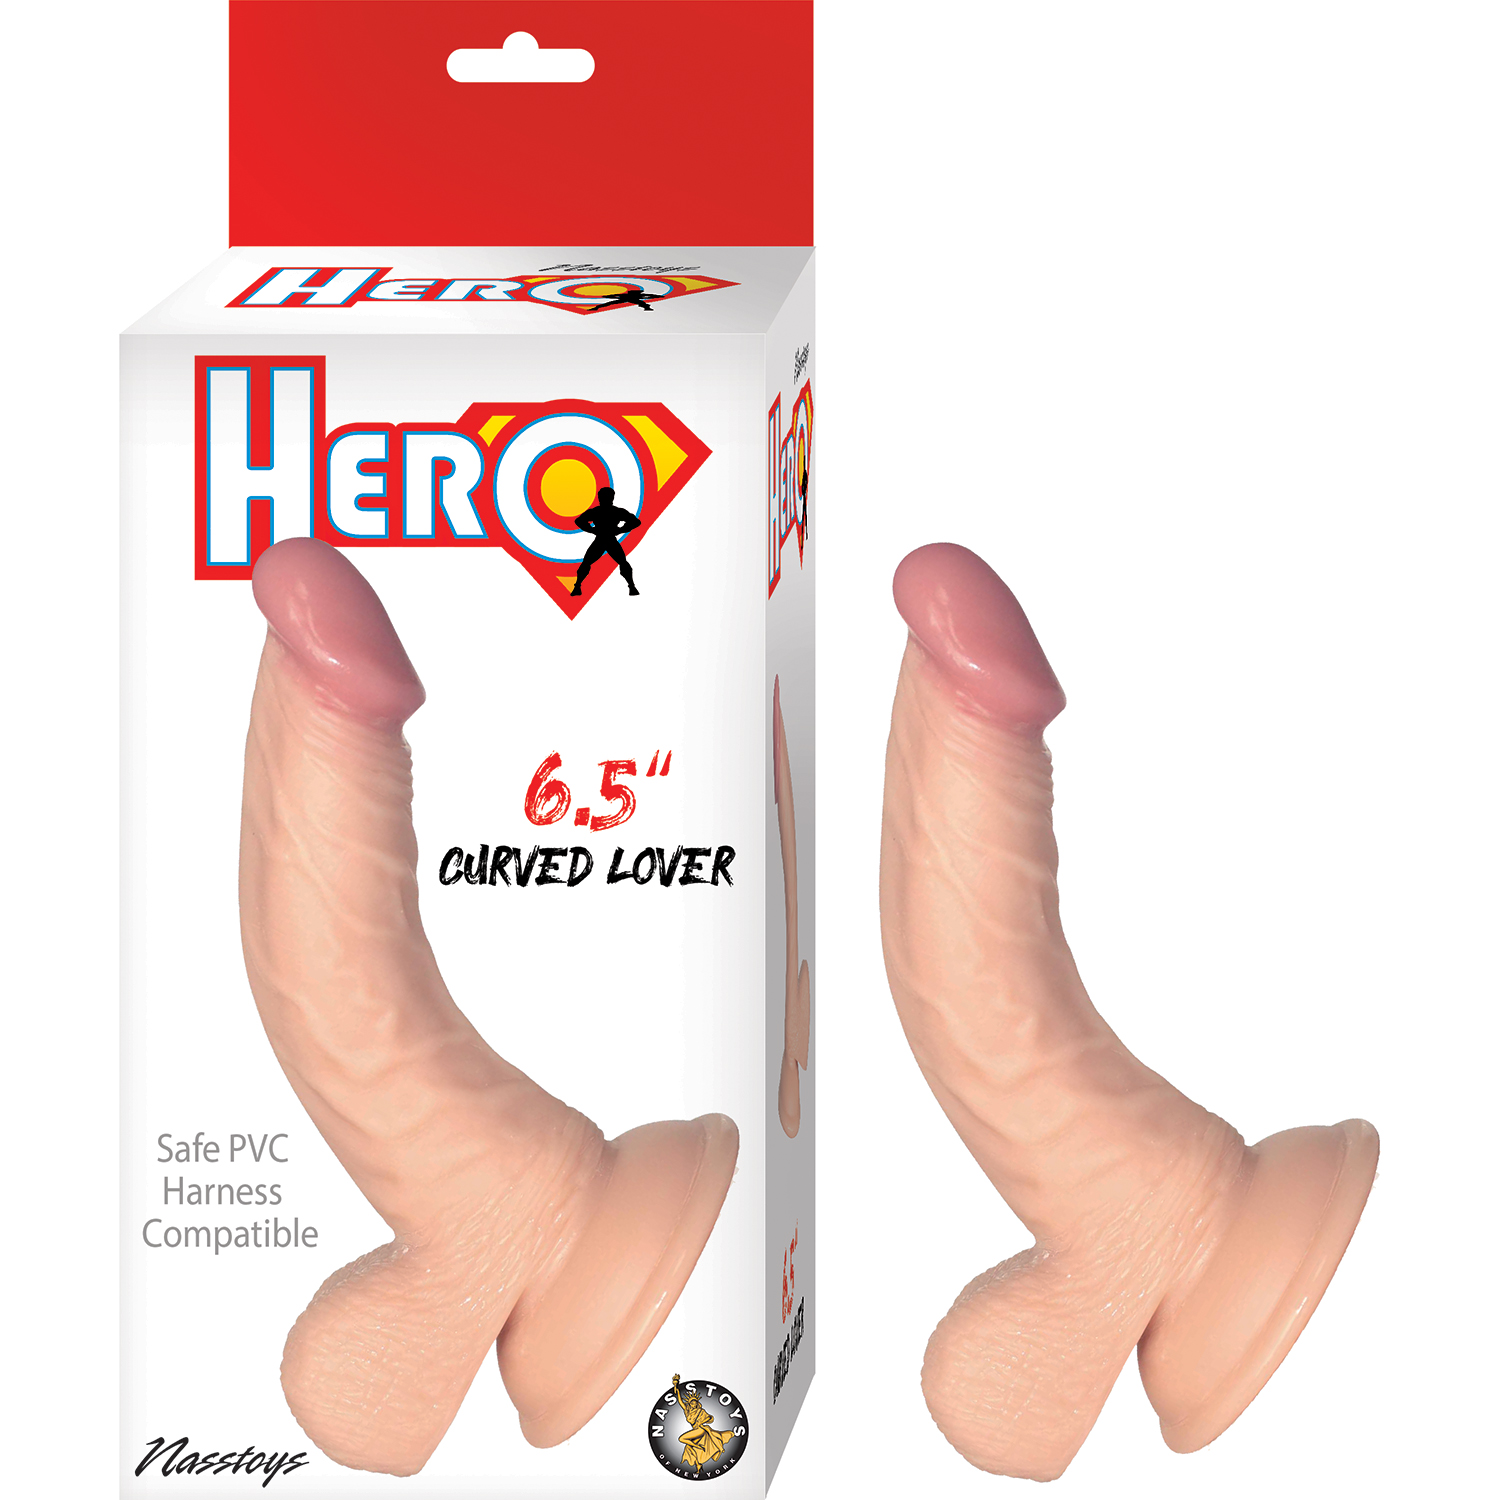 HERO 6.5IN CURVED LOVER DILDO